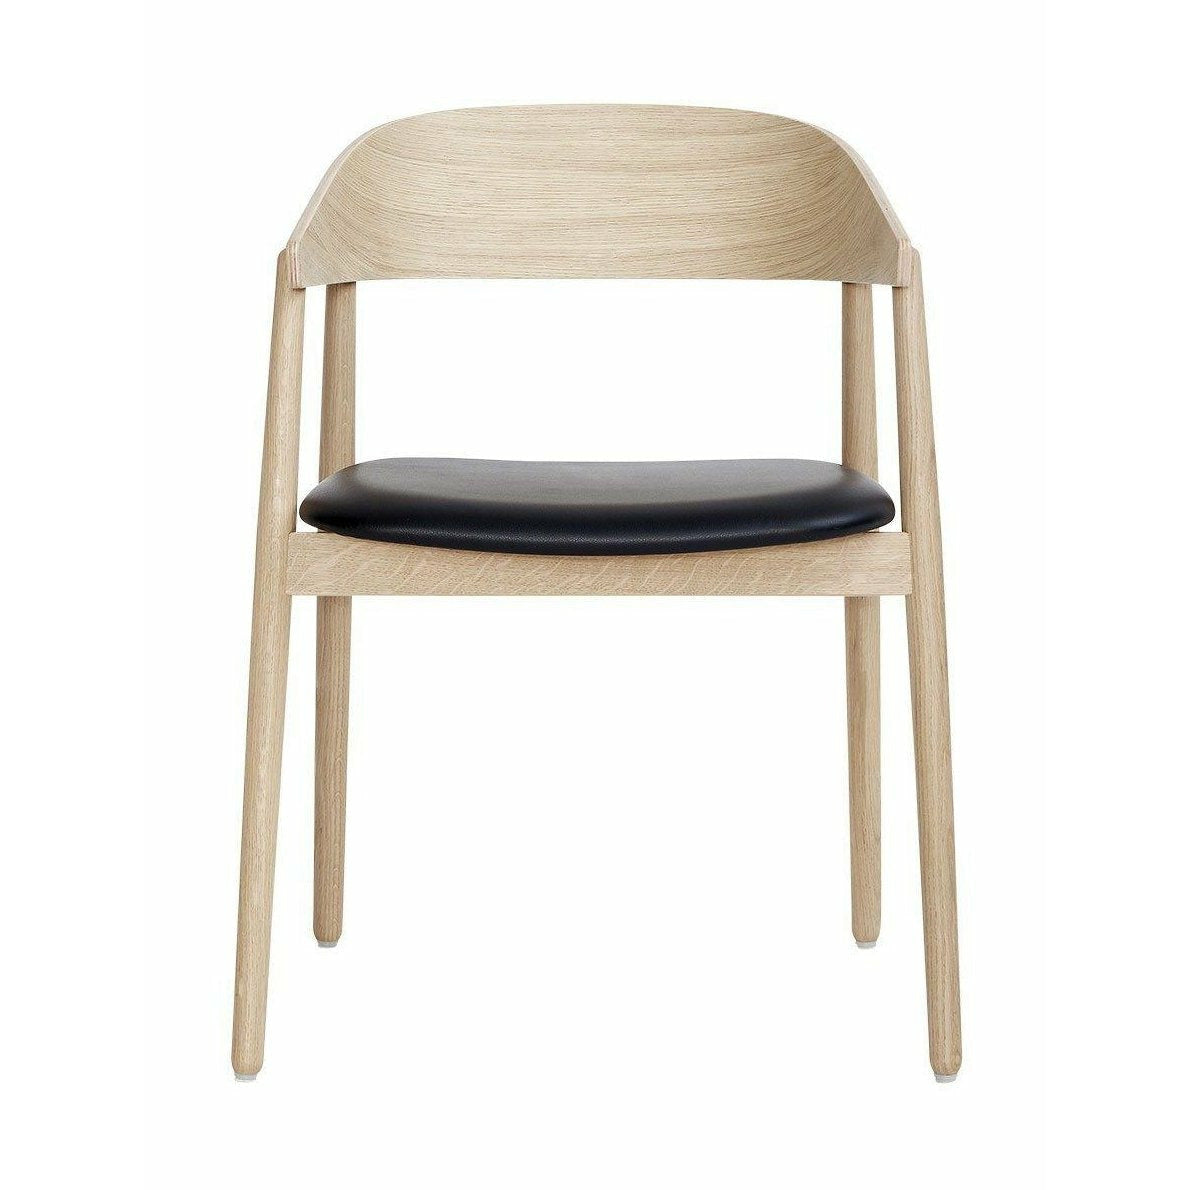 Andersen Furniture AC2 židle dubová dubová bílá pigmentovaná lakovaná, černá kožená sedačka